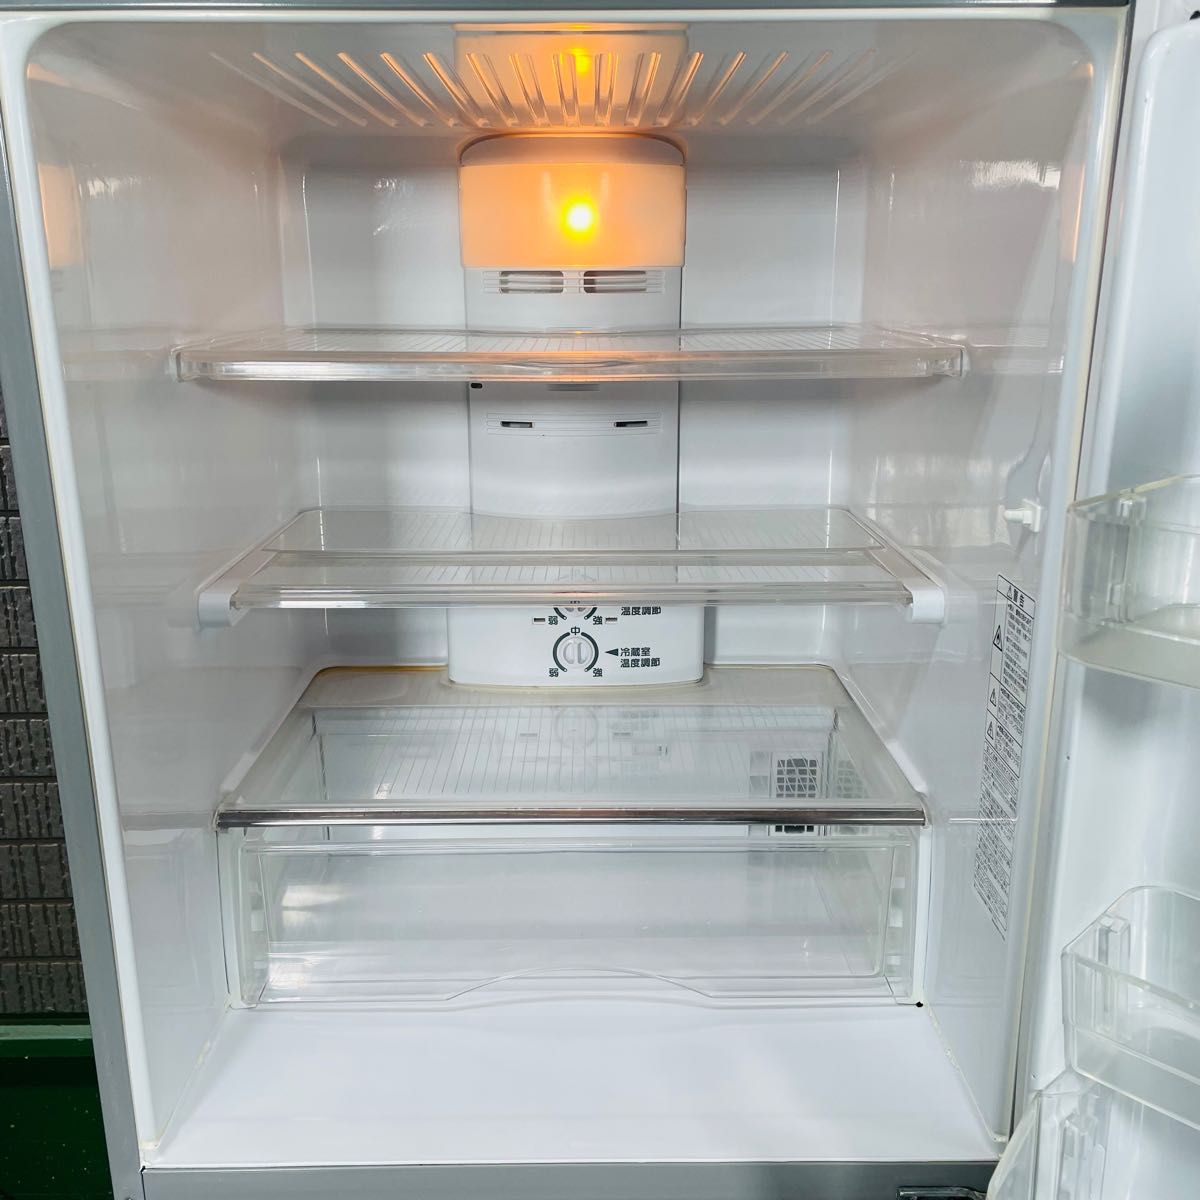 SANYO 255L 冷蔵庫 ロータイプ 天板耐熱 シルバー【地域限定配送無料】 キッチン家電 冷蔵庫、冷凍庫